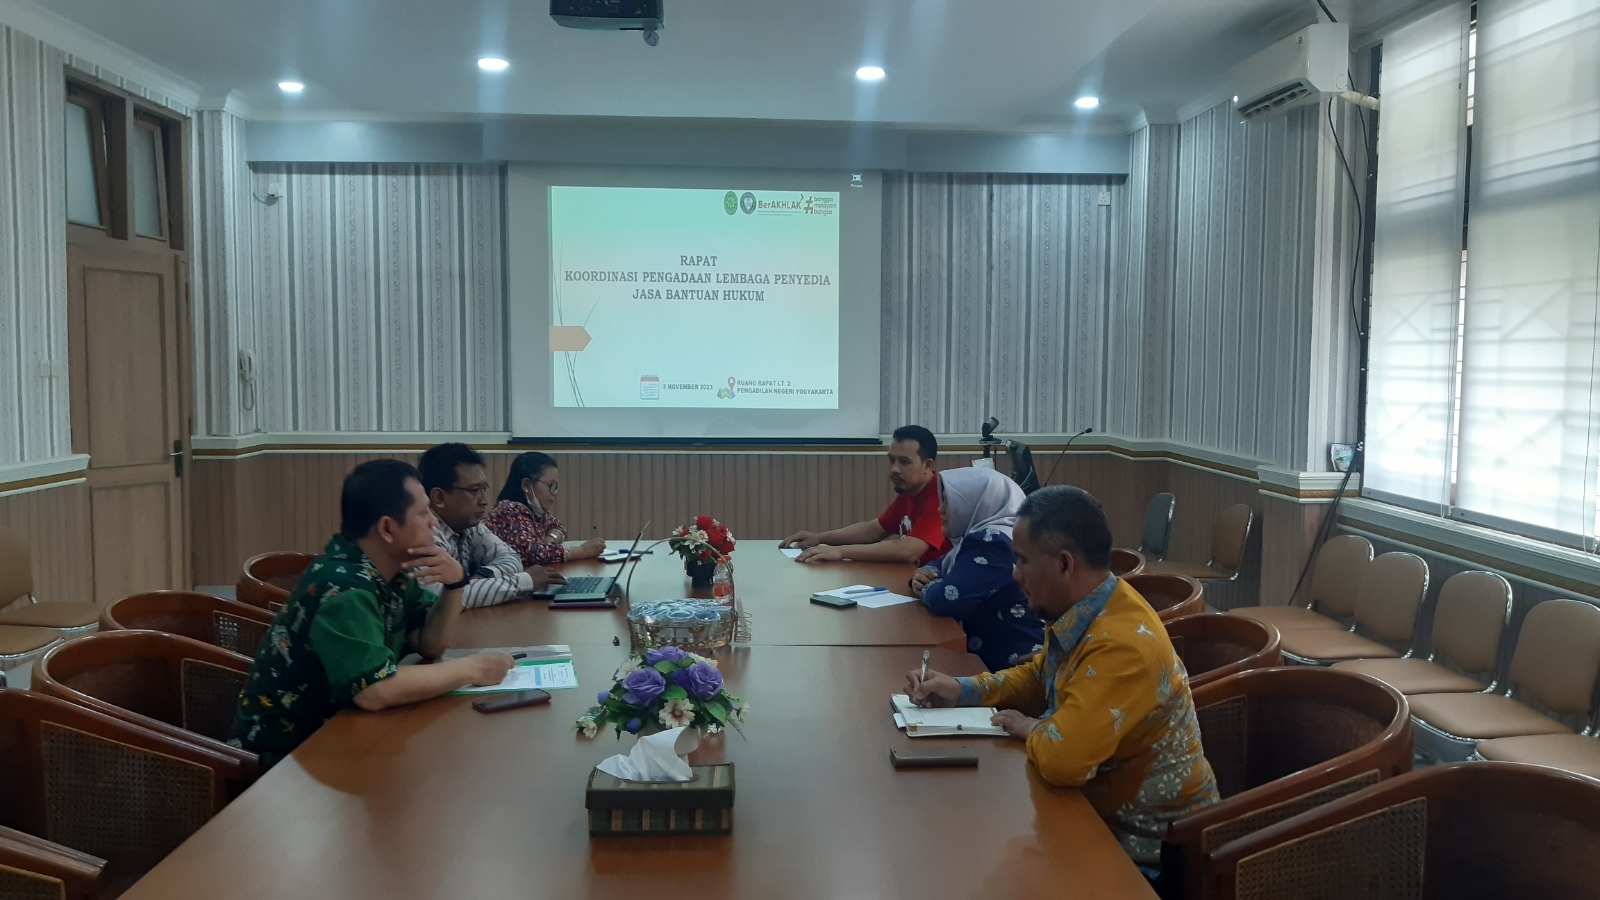 Rapat Koordinasi Pengadaan Lembaga Penyedia Jasa Bantuan Hukum Pengadilan Negeri Yogyakarta